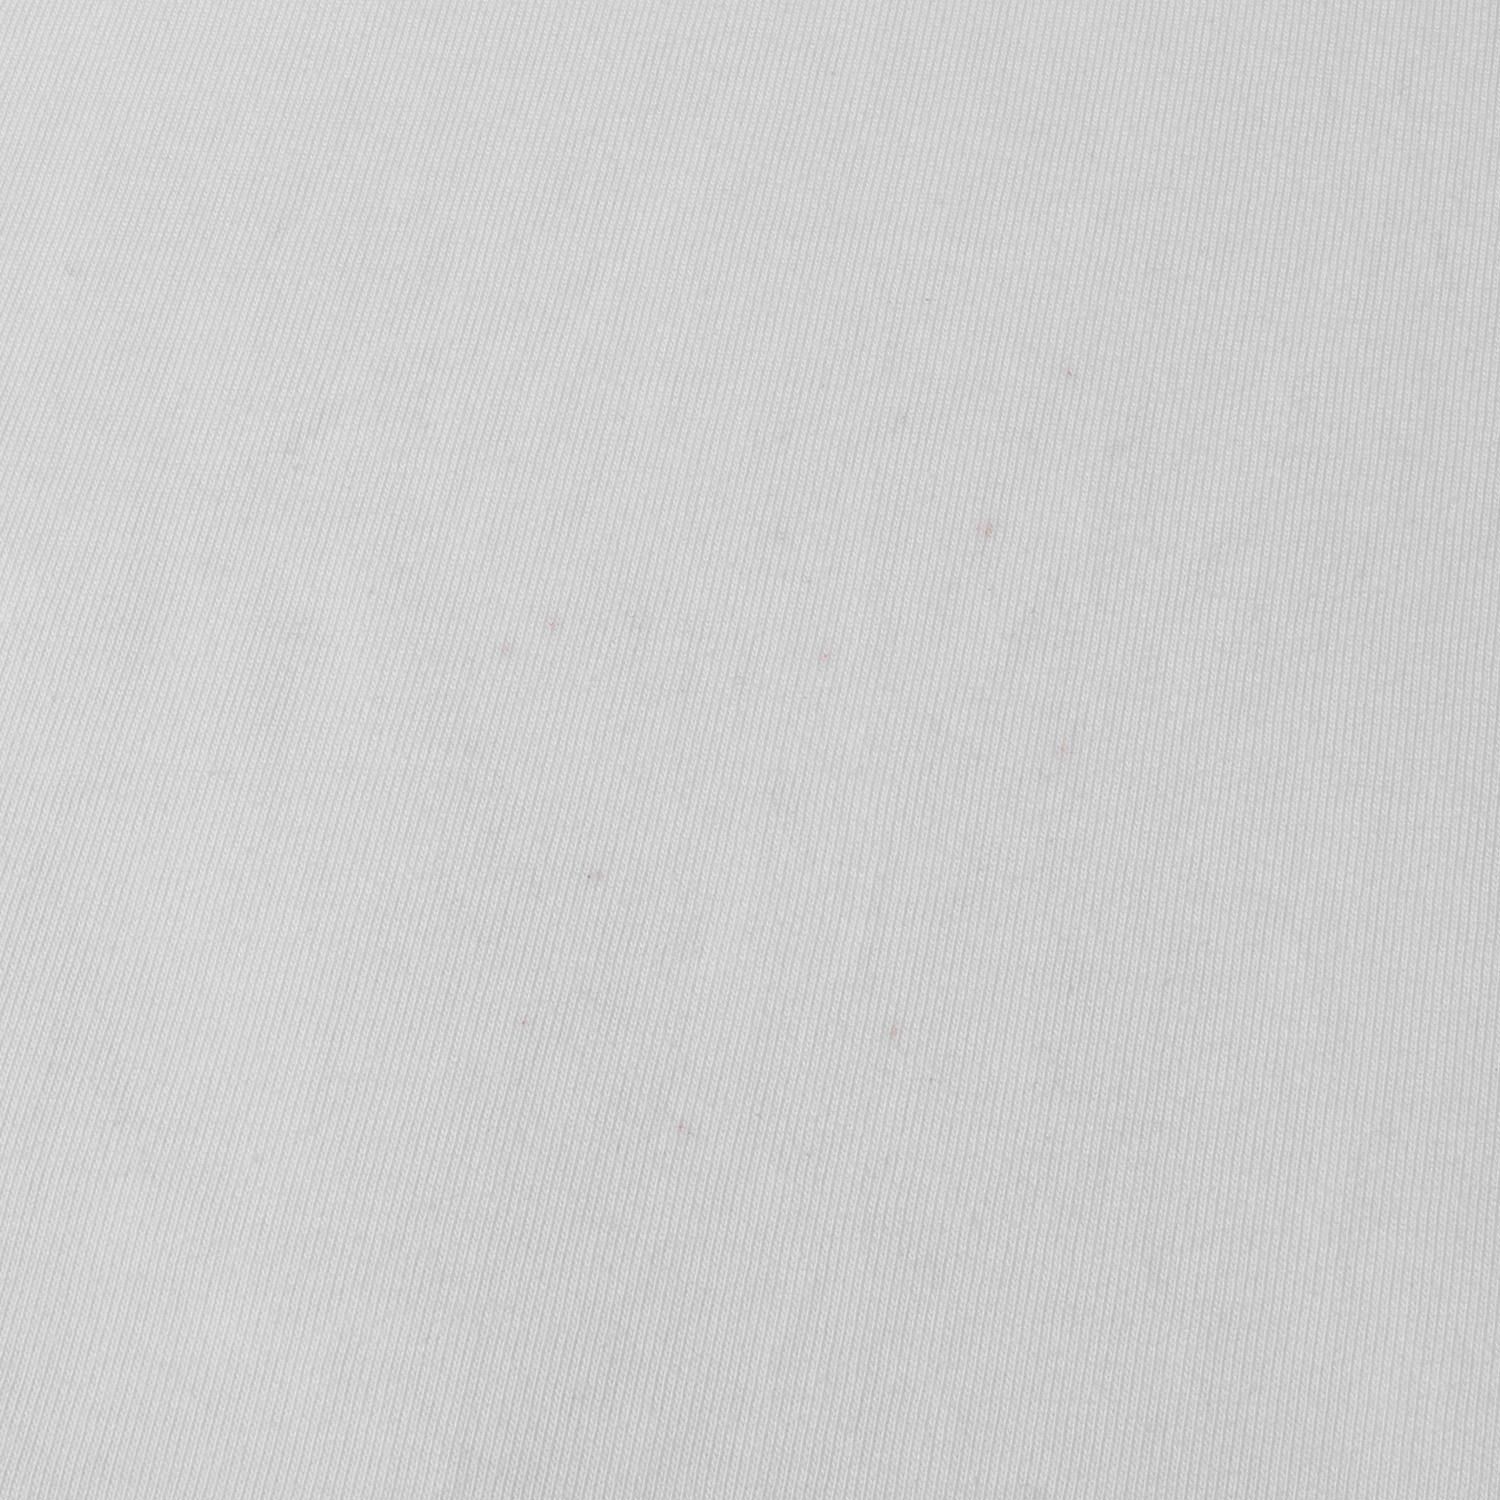 Dior HOMME ディオールオム Tシャツ サイズ:L 21SS フローラルロゴ 刺繍 クルーネック 半袖 Tシャツ 113J686A0554  ホワイト 白 イタリア製 ブランド トップス カットソー